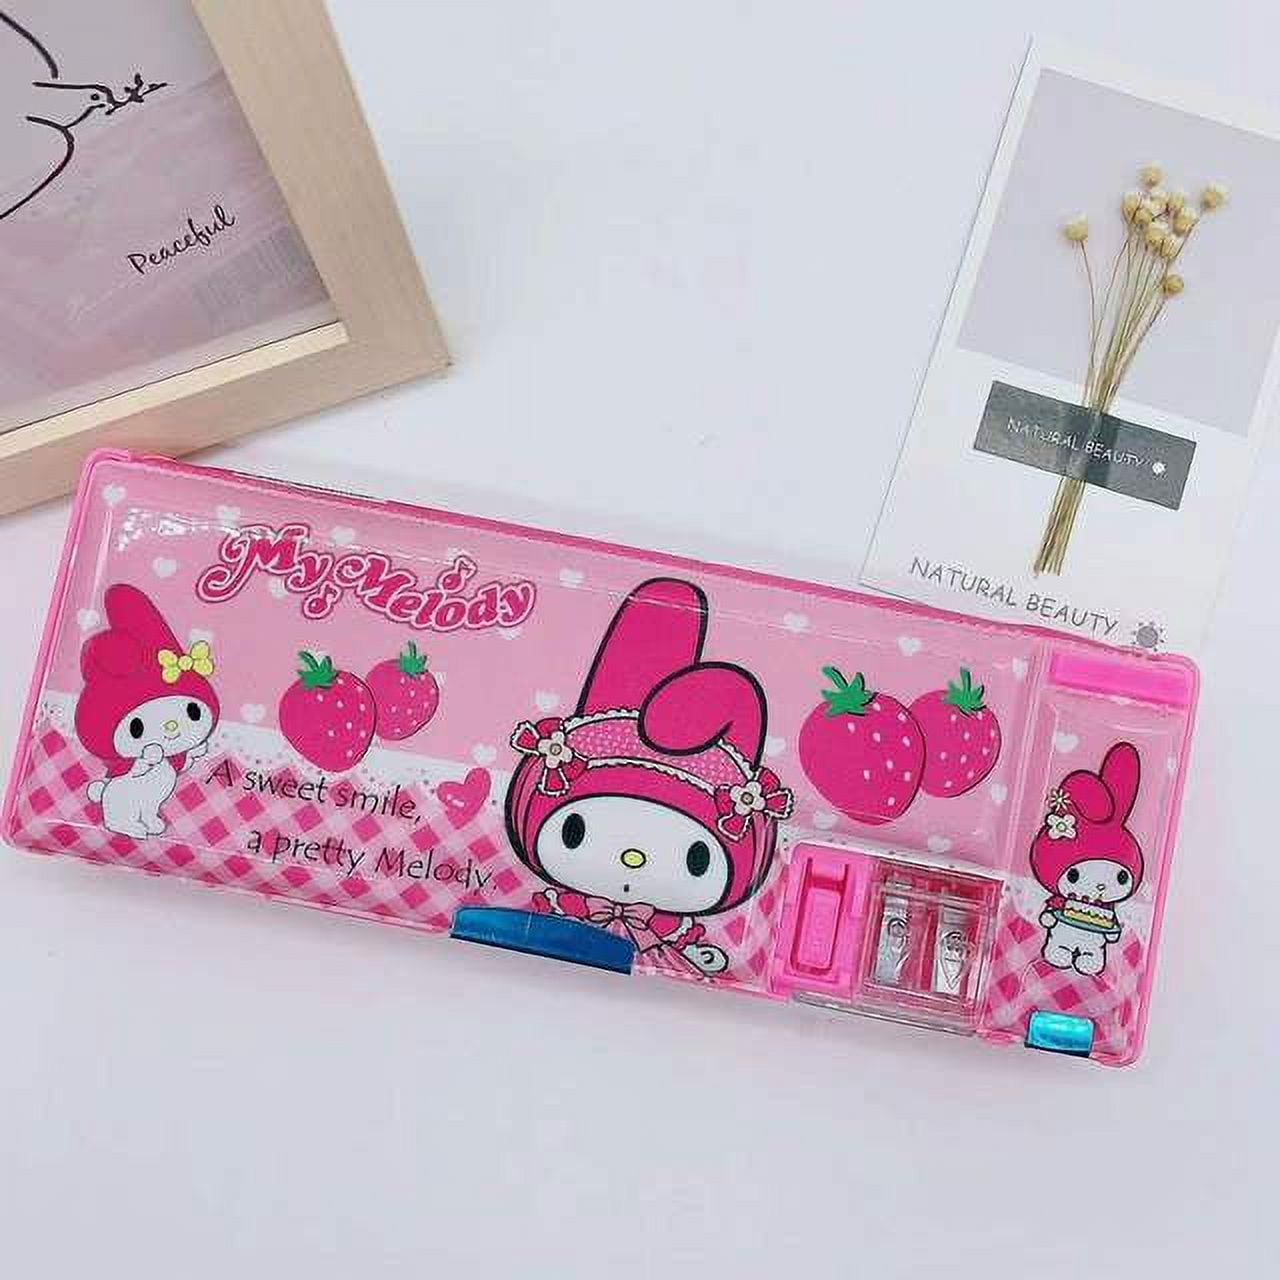 Ruunjoy Wholesale Sanrio Pink Pencil Case Kuromi Pencil Box Melody